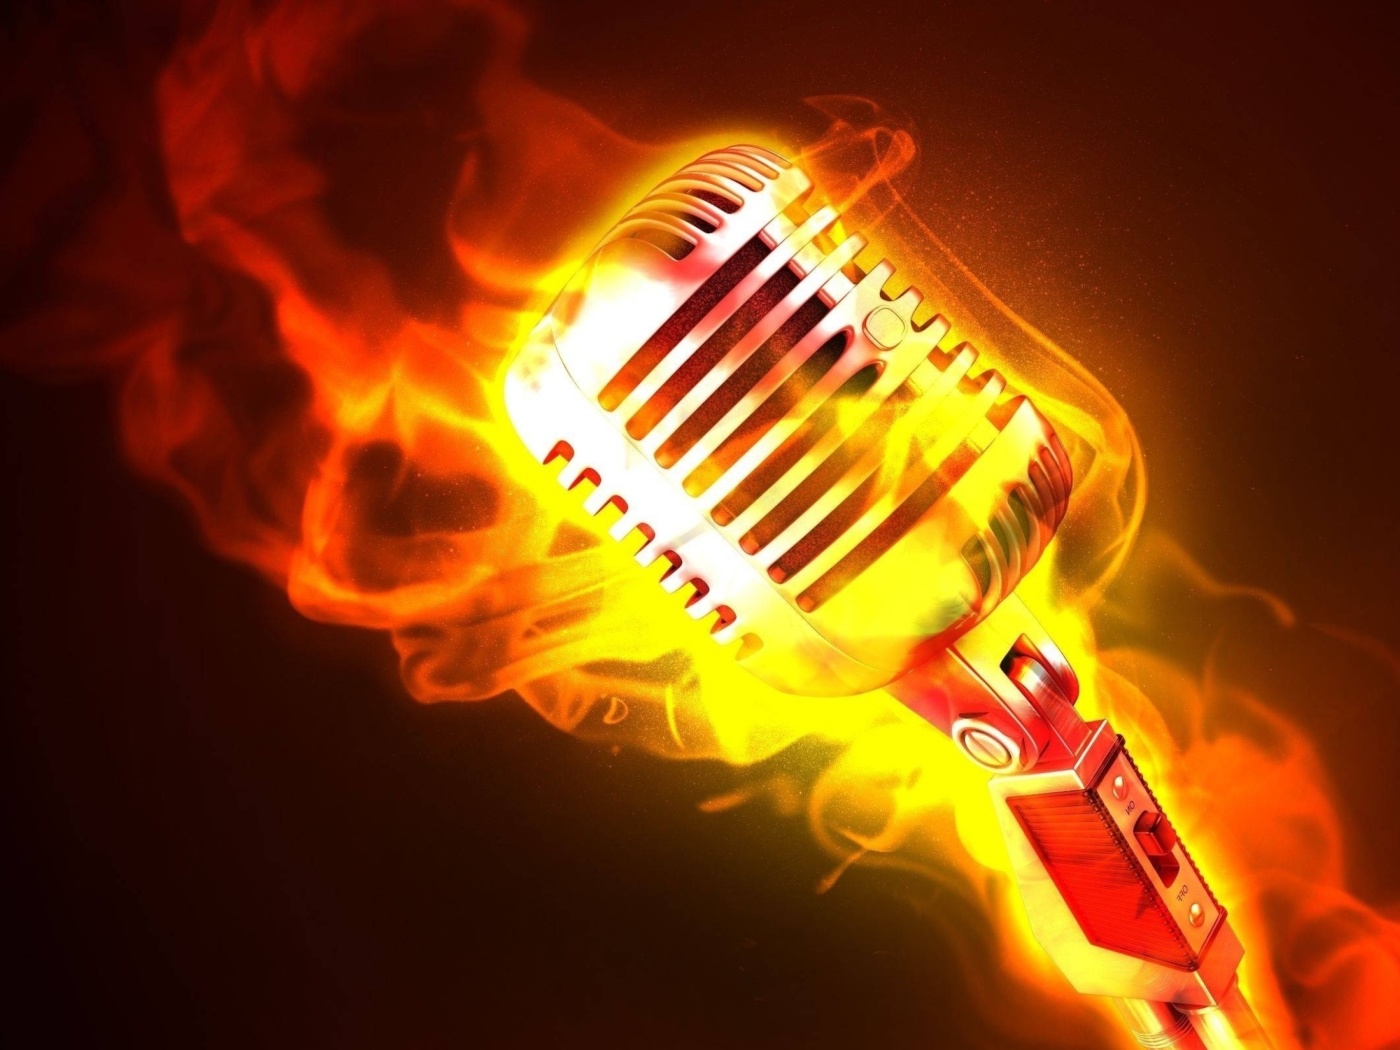 Обои Microphone in Fire 1400x1050